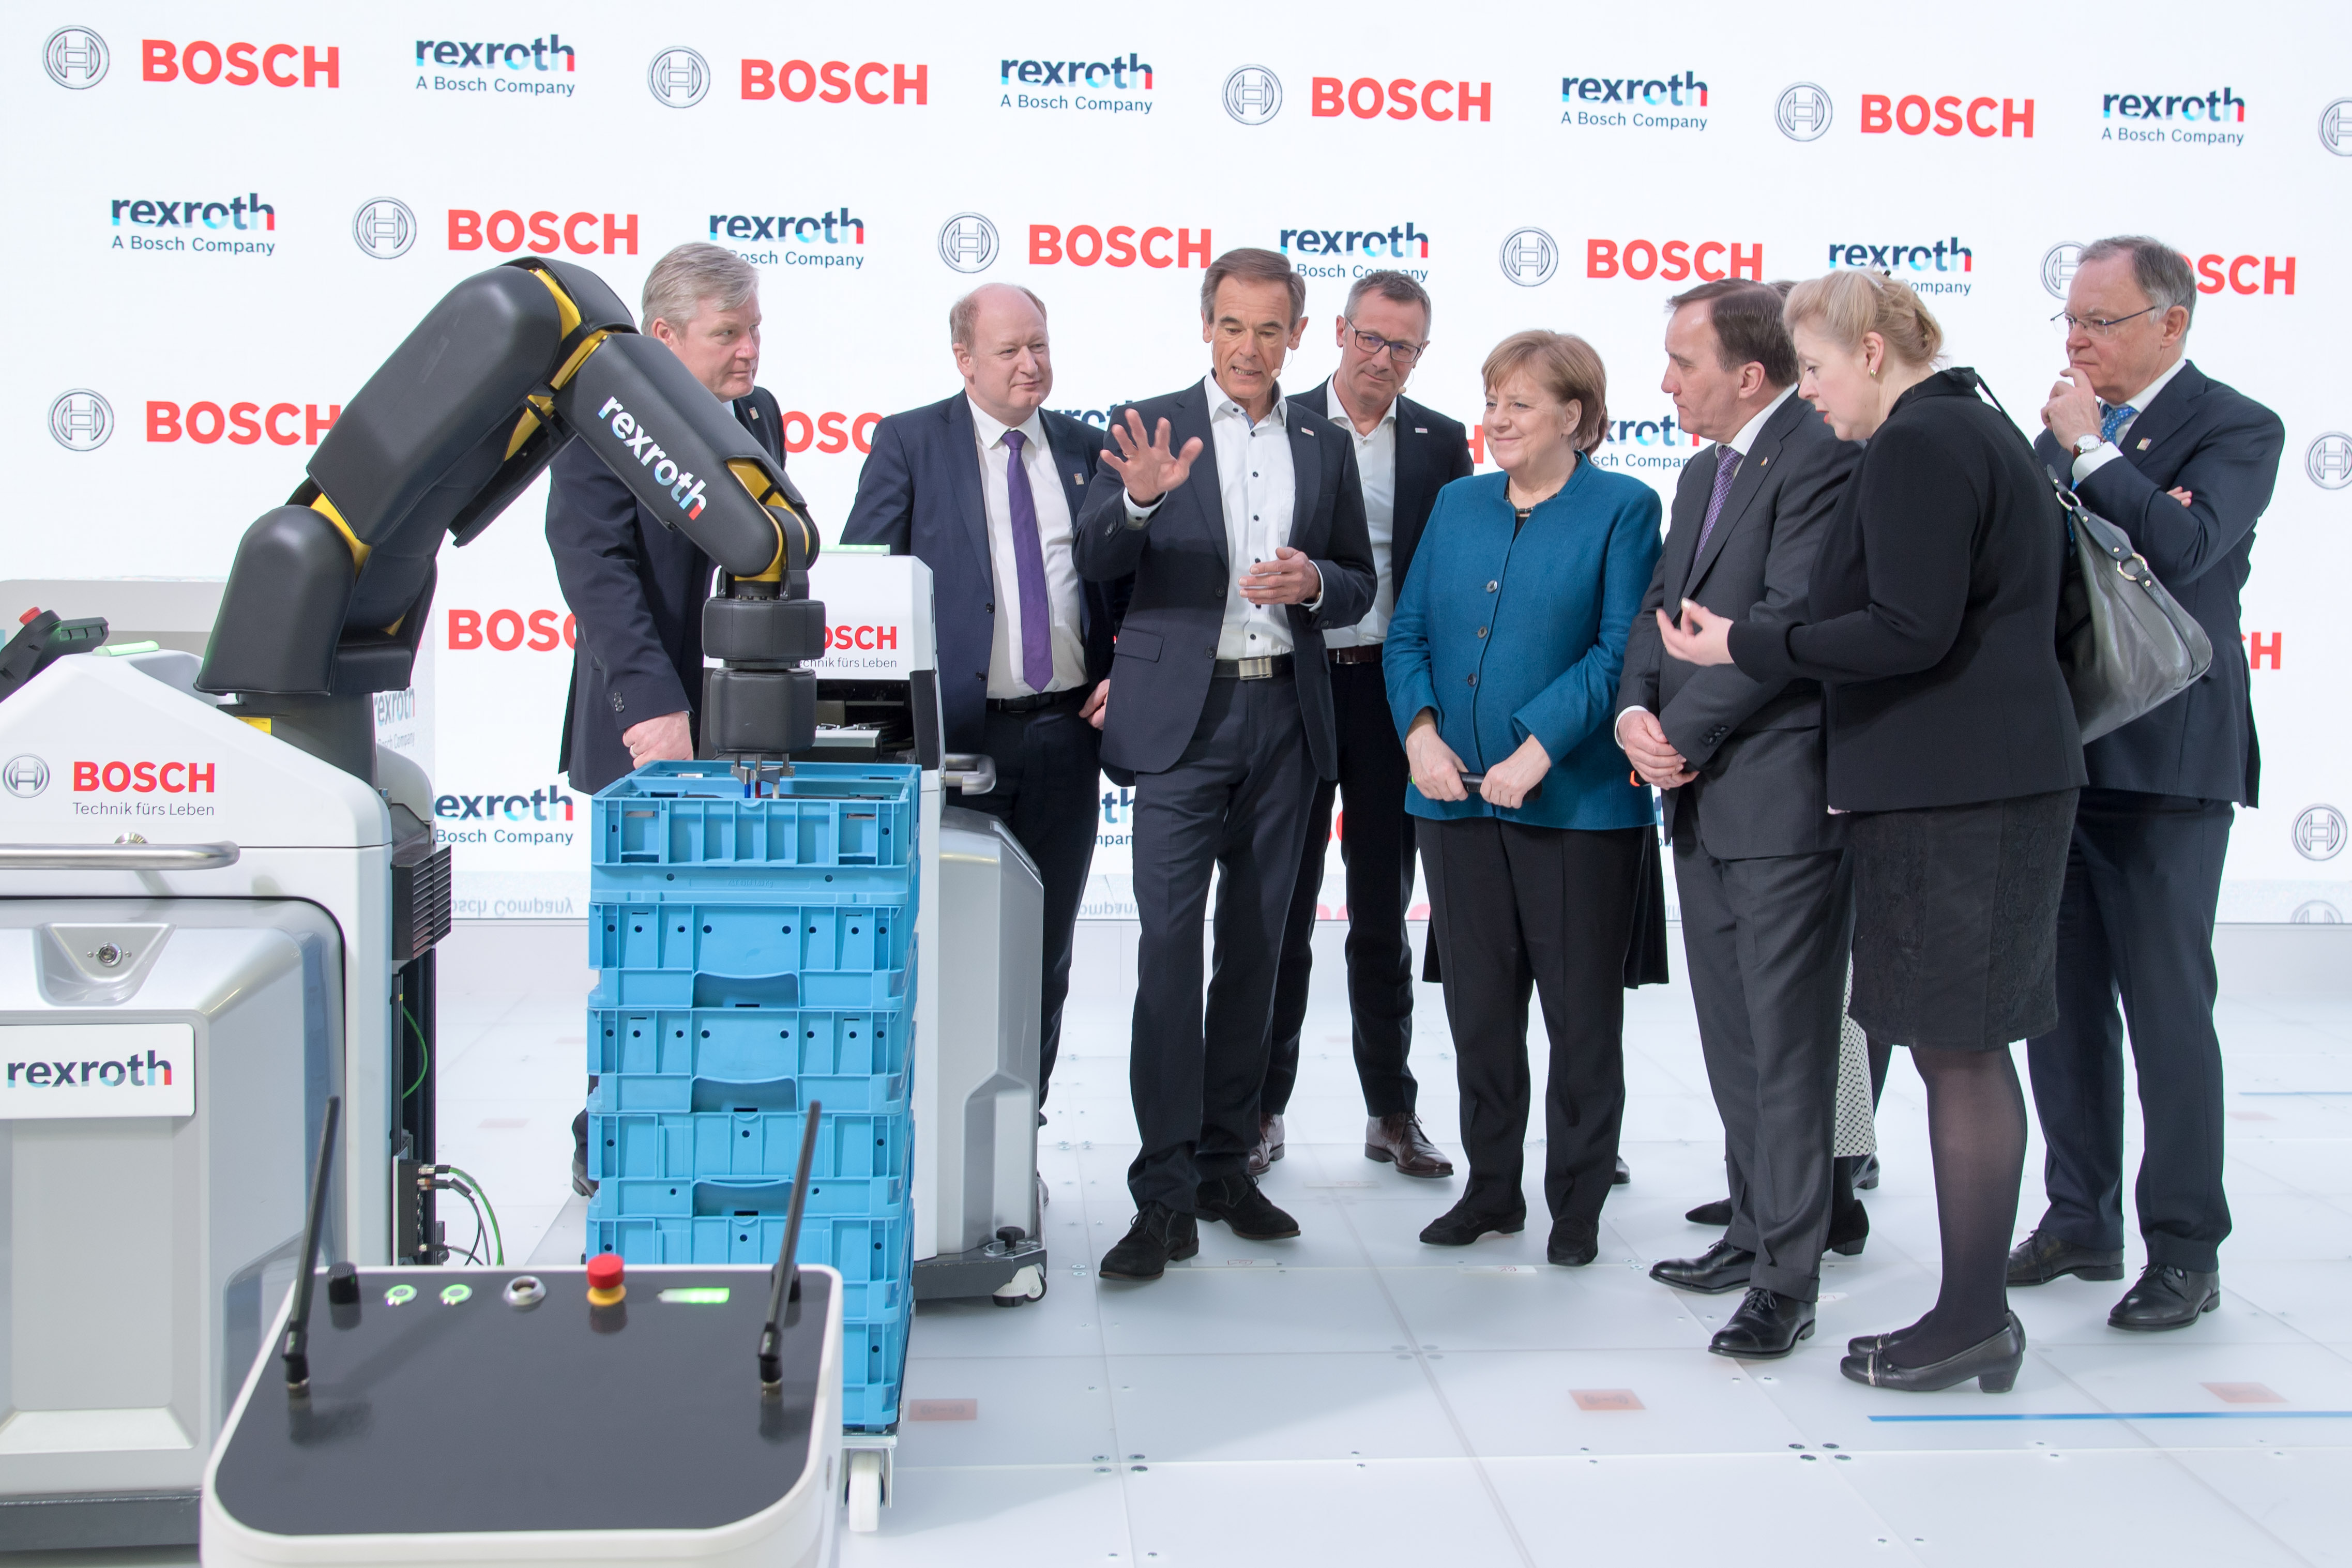 Bundeskanzlerin Angela Merkel und der schwedische Ministerpräsident Stefan Löfven besuchen den Bosch-Stand auf der Hannover Messe 2019. Im Fokus stehen autonome Transportsysteme und intelligente Robotik.